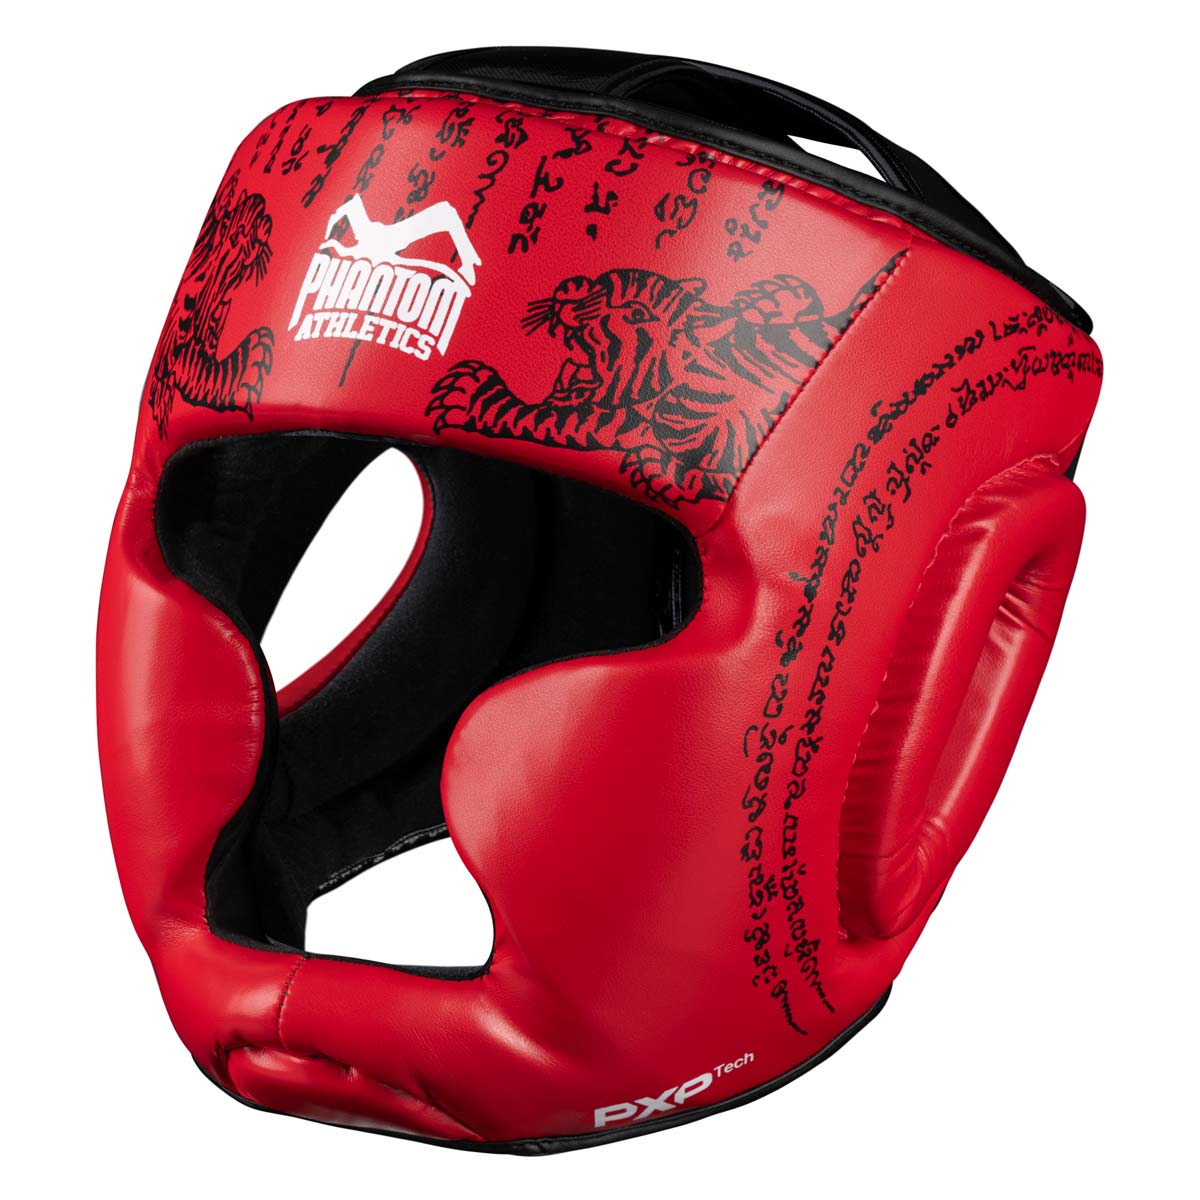 Phantom Muay Thai Kopfschutz für Thaiboxen und MMA Sparring, Wettkampf und Training. Im traditionellen Sak Yant Design und der Farbe Rot.